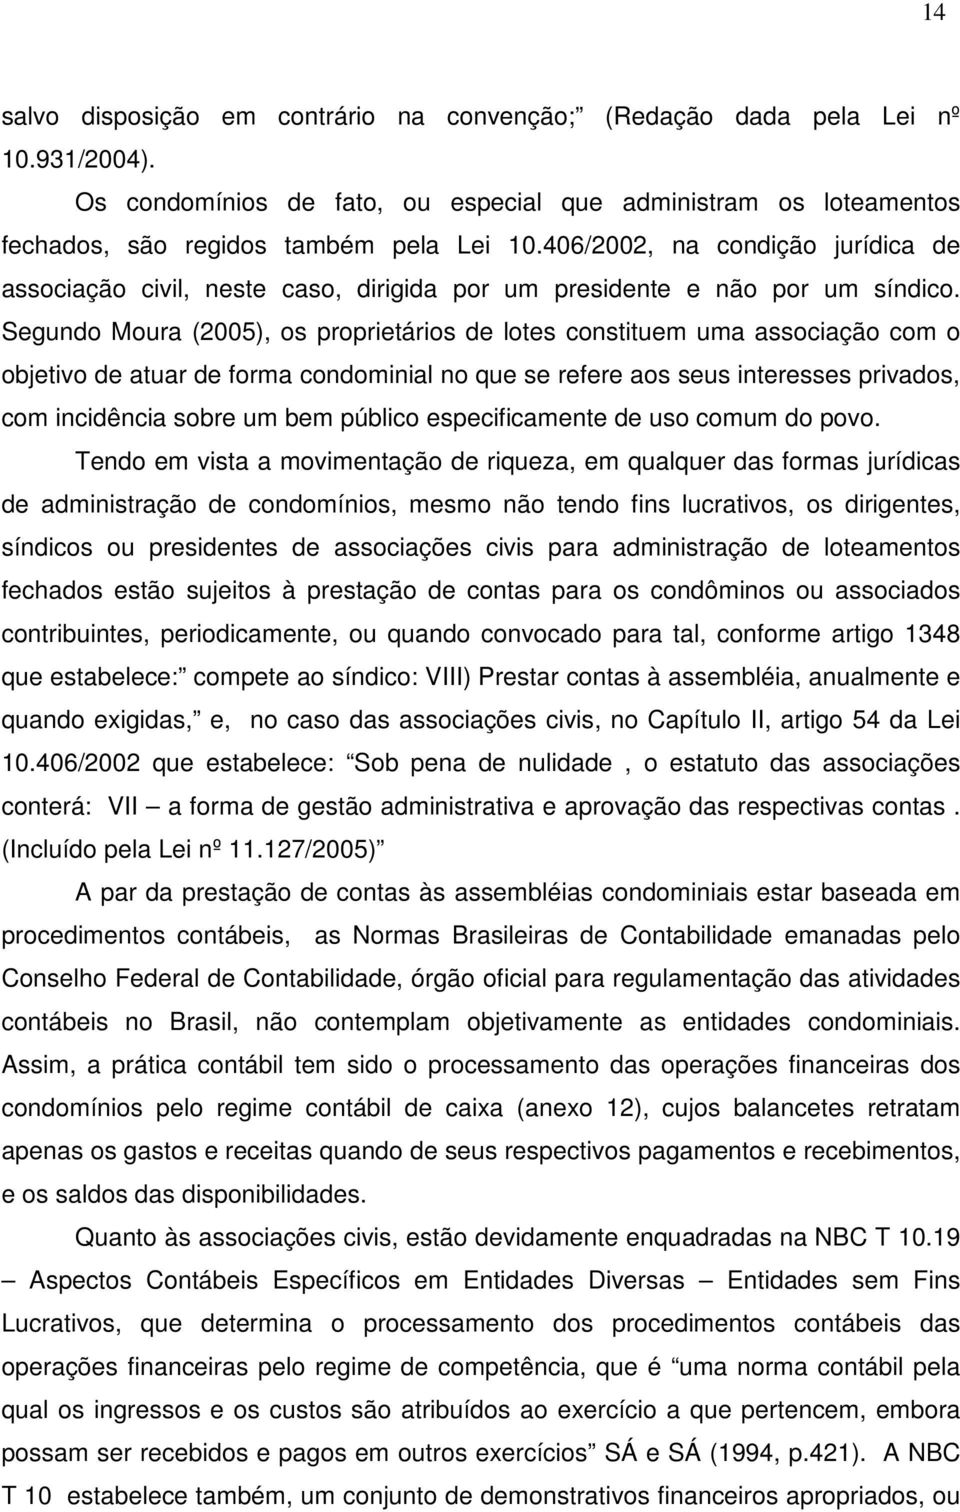 Segundo Moura (2005), os proprietários de lotes constituem uma associação com o objetivo de atuar de forma condominial no que se refere aos seus interesses privados, com incidência sobre um bem